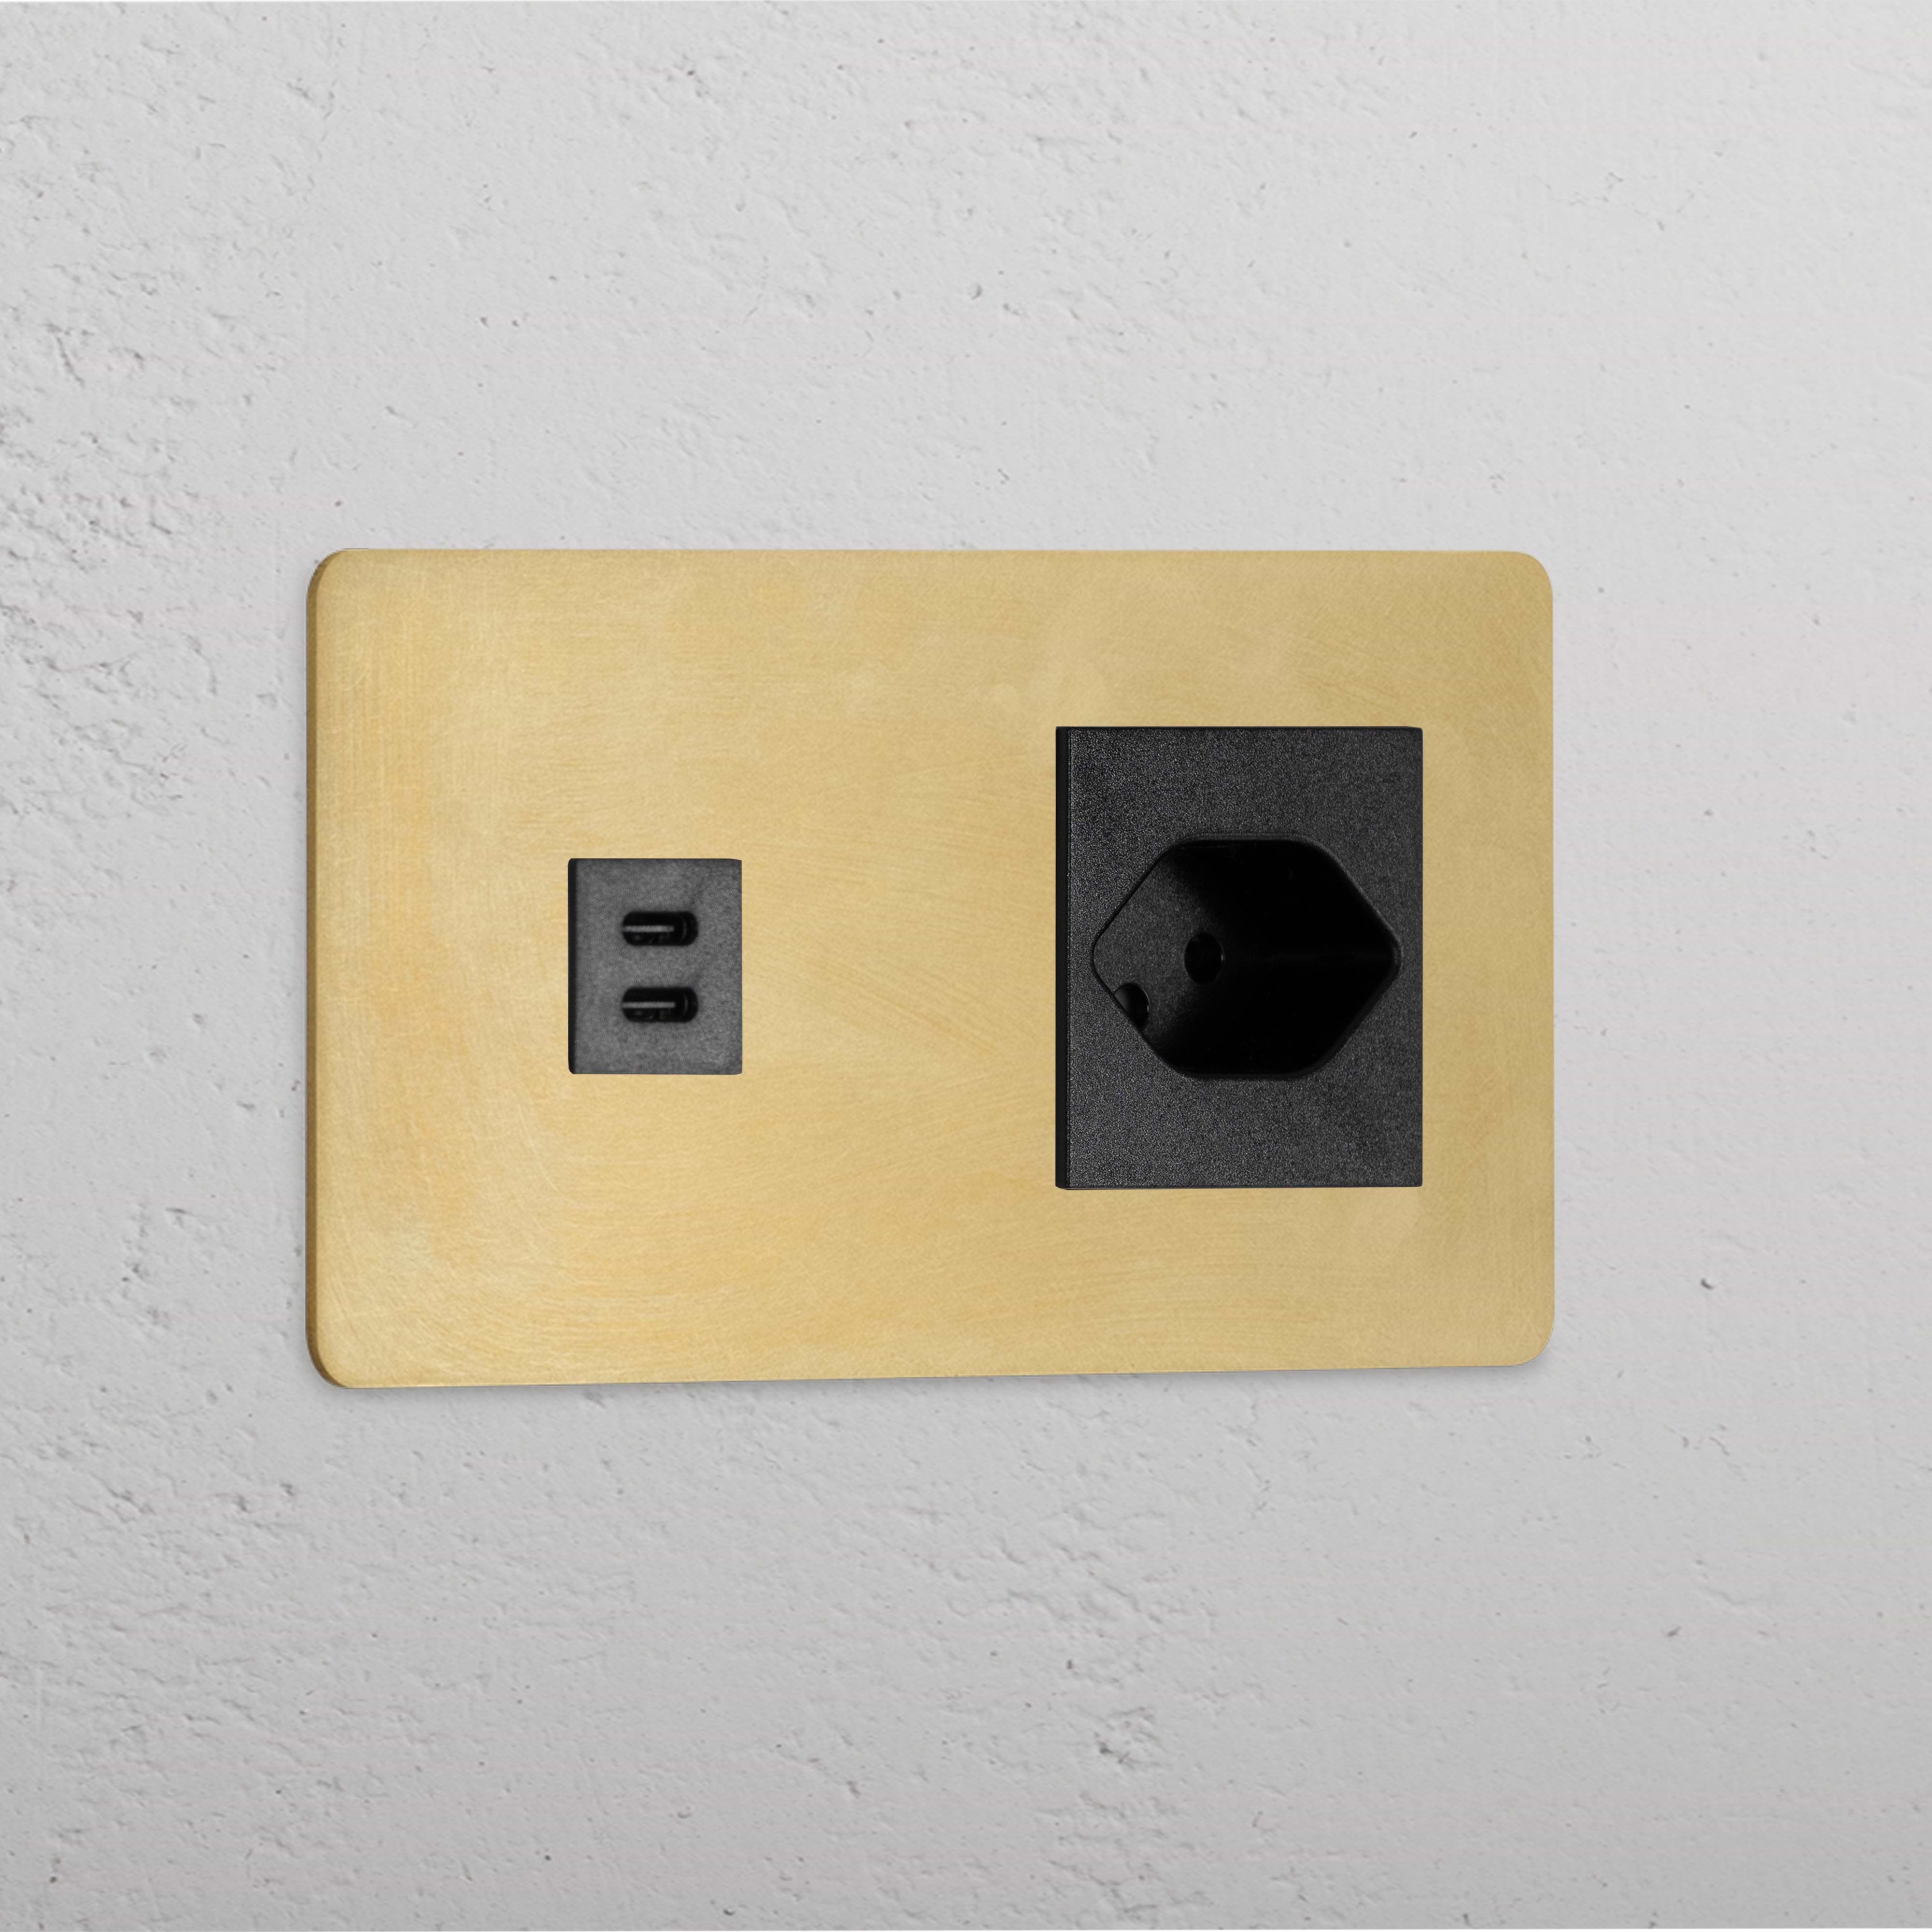 USB-C-Anschluss (30 W) + Schweizer Steckdoseneinsatz (Typ J) je 1x in Zweifachrahmen – Antikes Messing + Schwarz